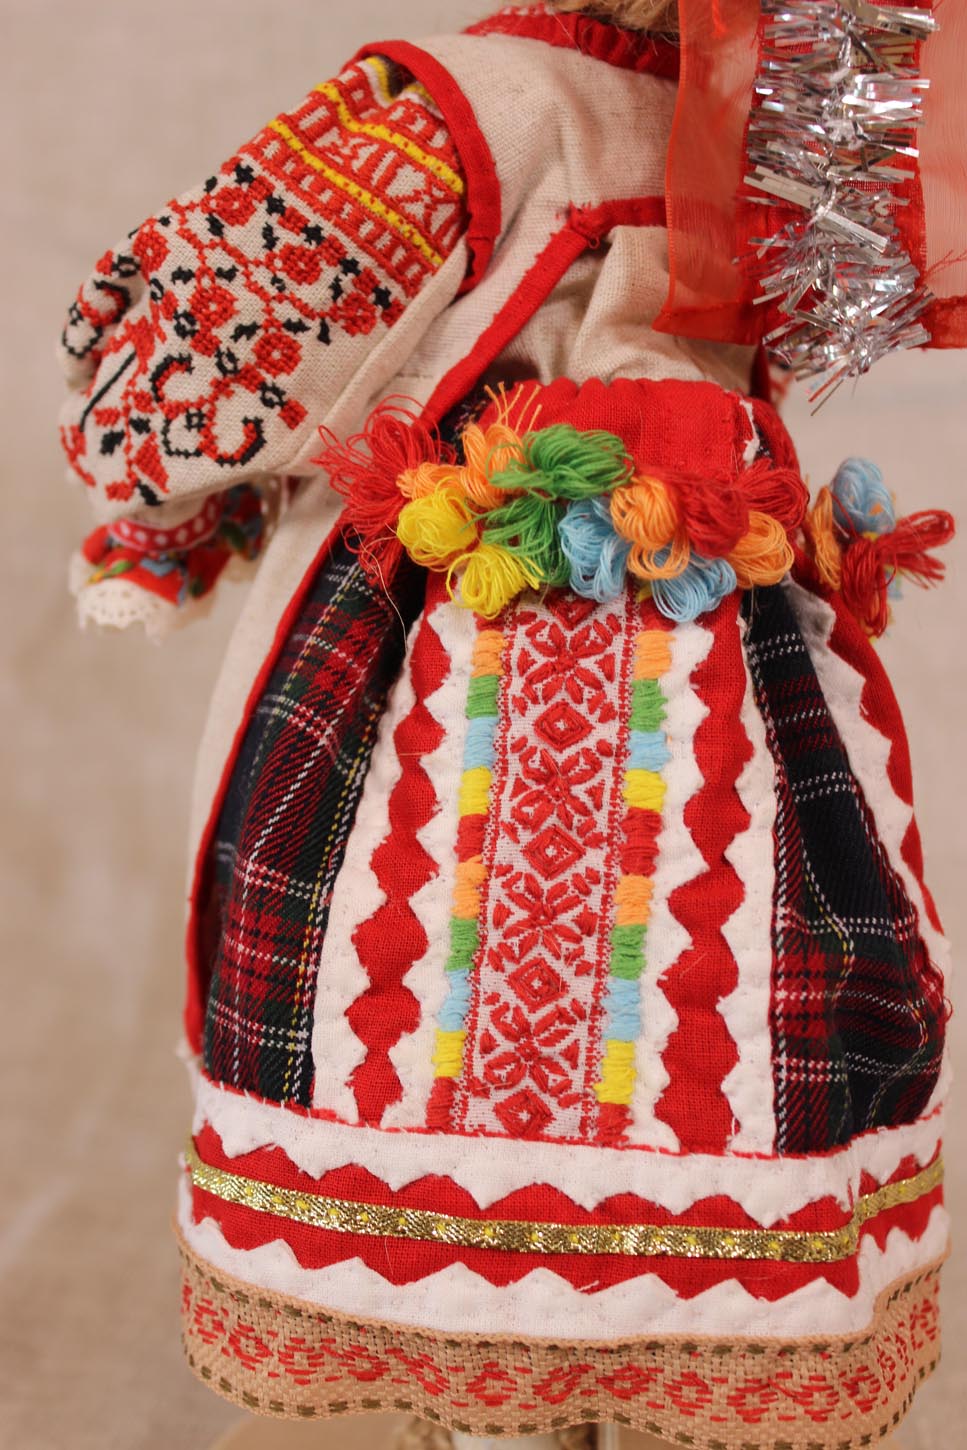 Кукла в праздничном костюме Юхновского района. Фрагмент.